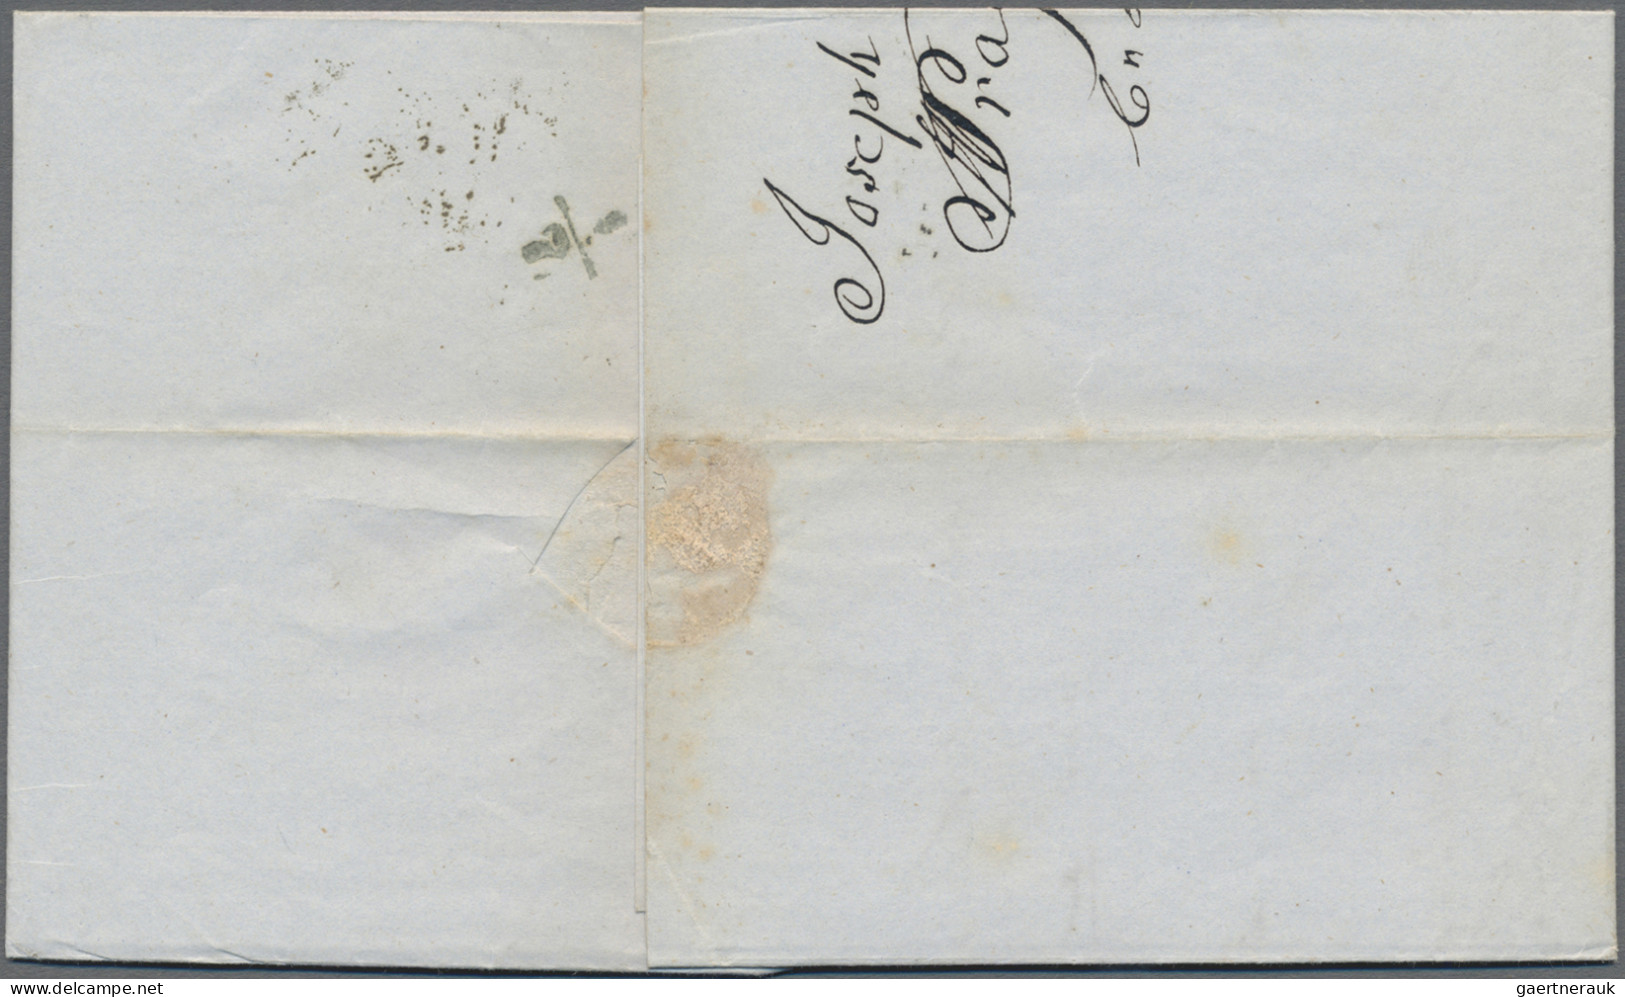 Österreich: 1850, 6 Kr. Braun, Handpapier, Type Ia, Kabinettstück Als Einzelfran - Briefe U. Dokumente